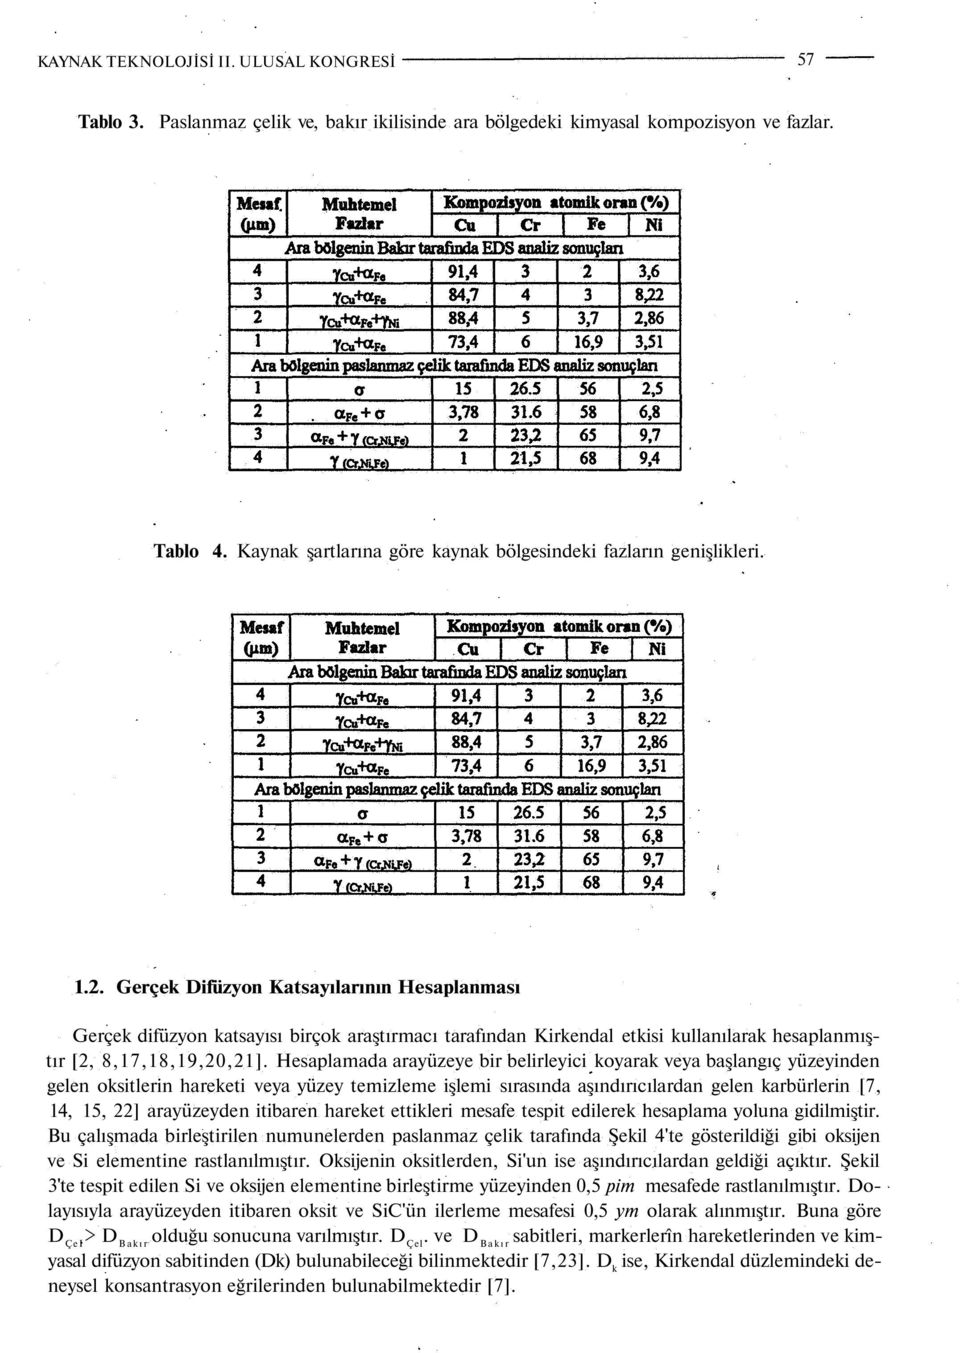 Gerçek Difüzyon Katsayılarının Hesaplanması Gerçek difüzyon katsayısı birçok araştırmacı tarafından Kirkendal etkisi kullanılarak hesaplanmıştır [2, 8,17,18,19,20,21].